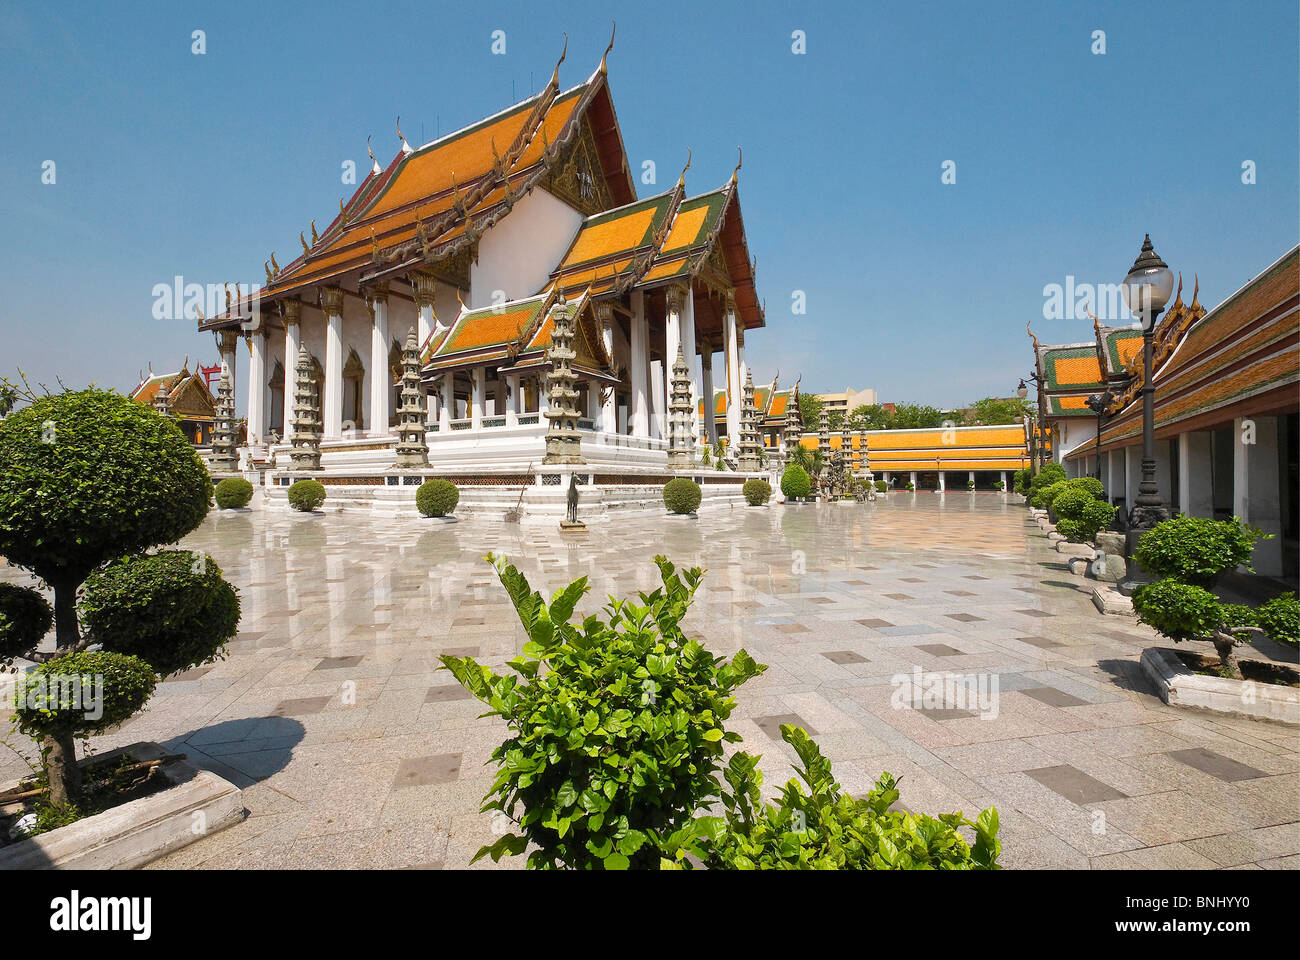 La ville de Bangkok Siam Thaïlande Asie du Sud-Est, le bouddhisme religion temple Wat Wat Suthat cour intérieure du pavillon bleu Viharn Luang Banque D'Images